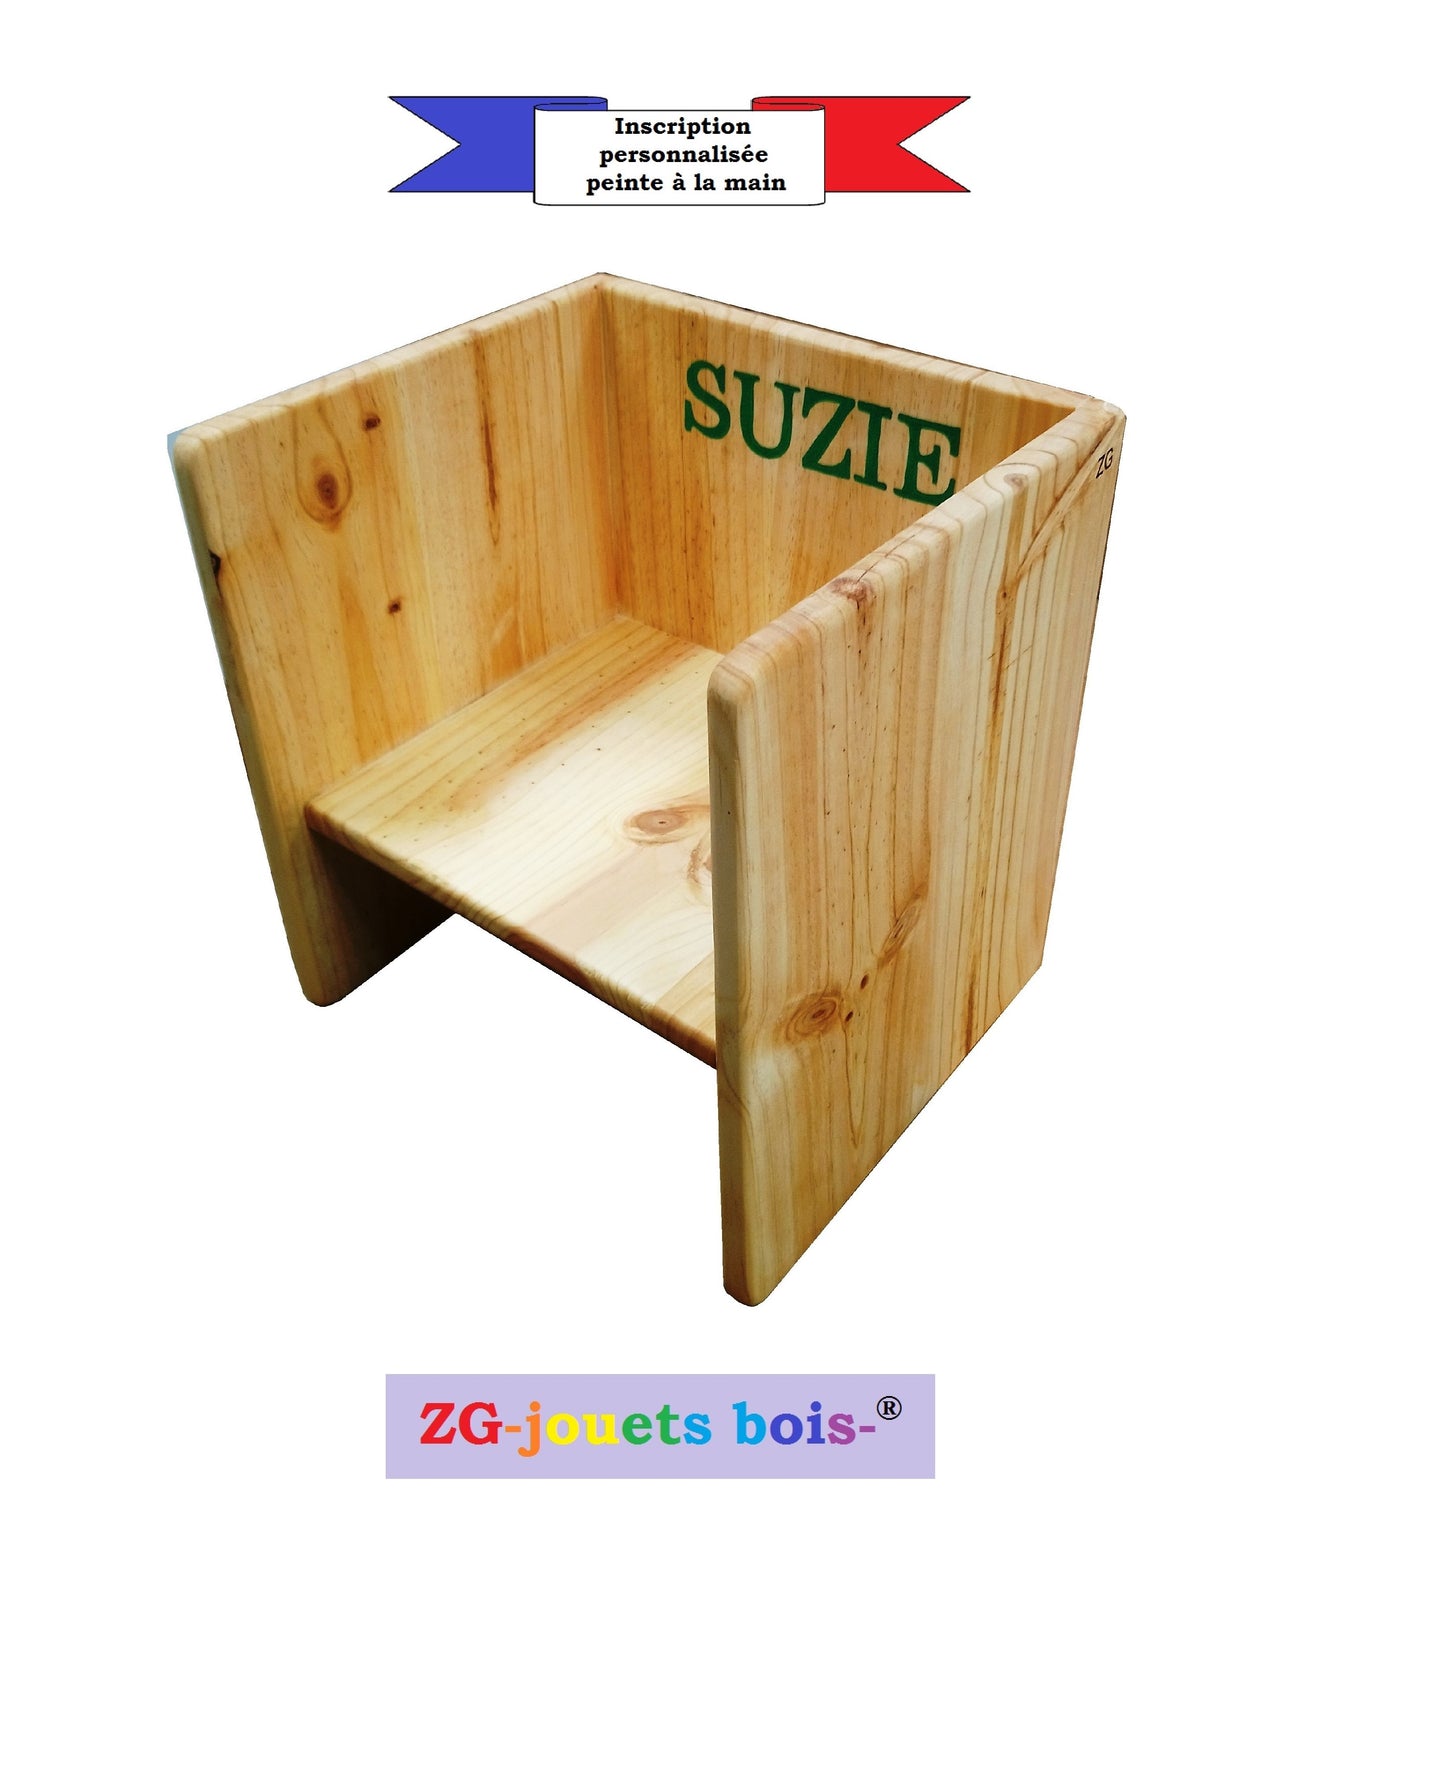 Petite Chaise cube Montessori